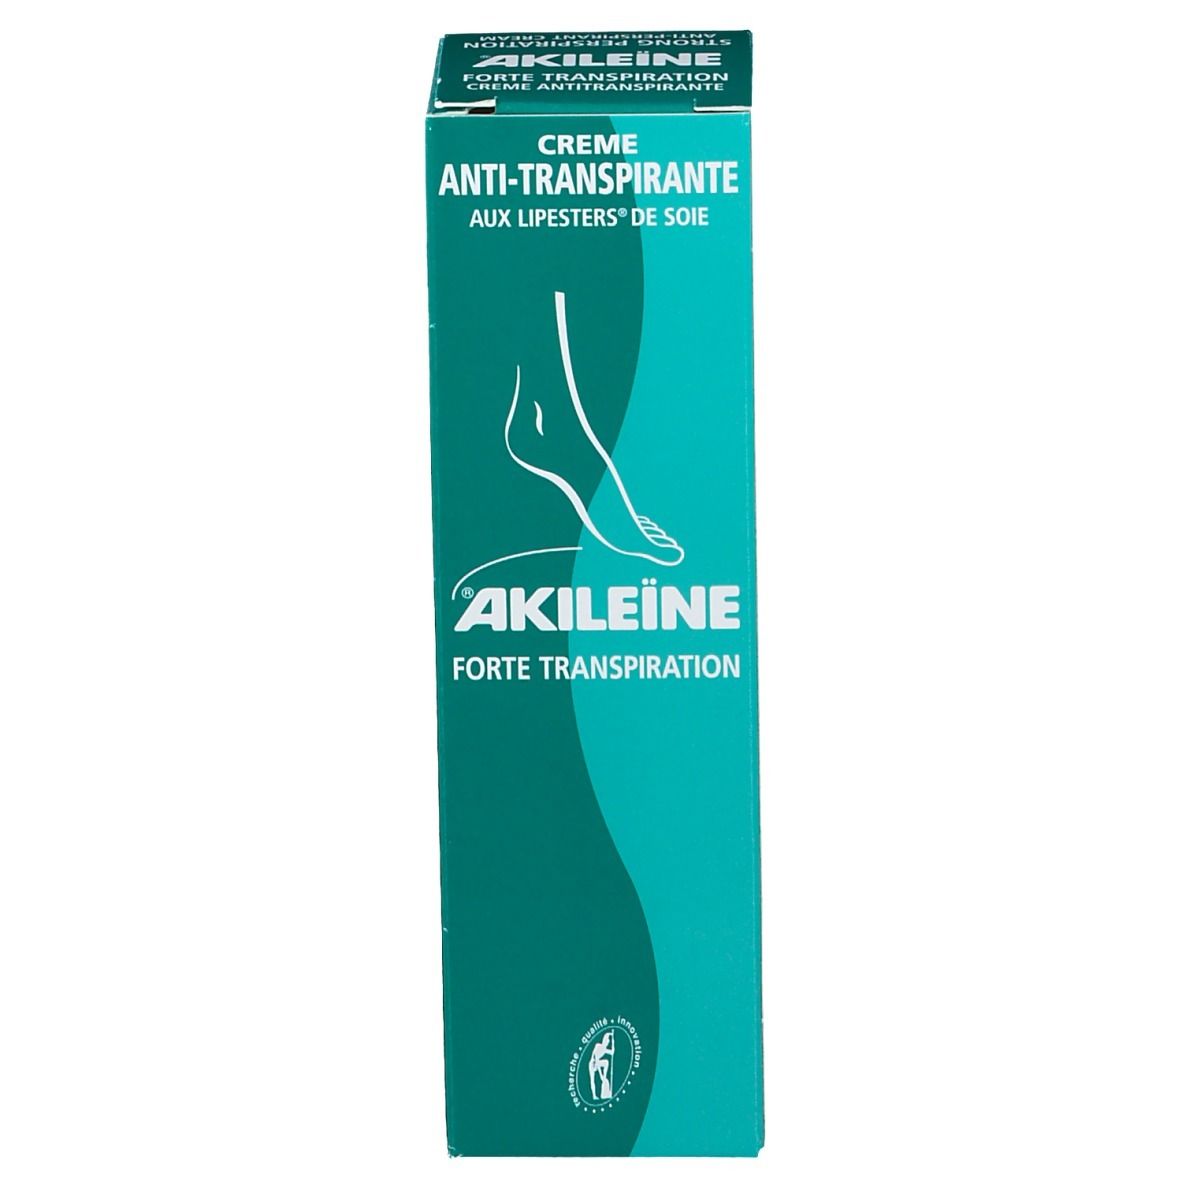 Akileïne crème anti-transpirante peau fragilisée